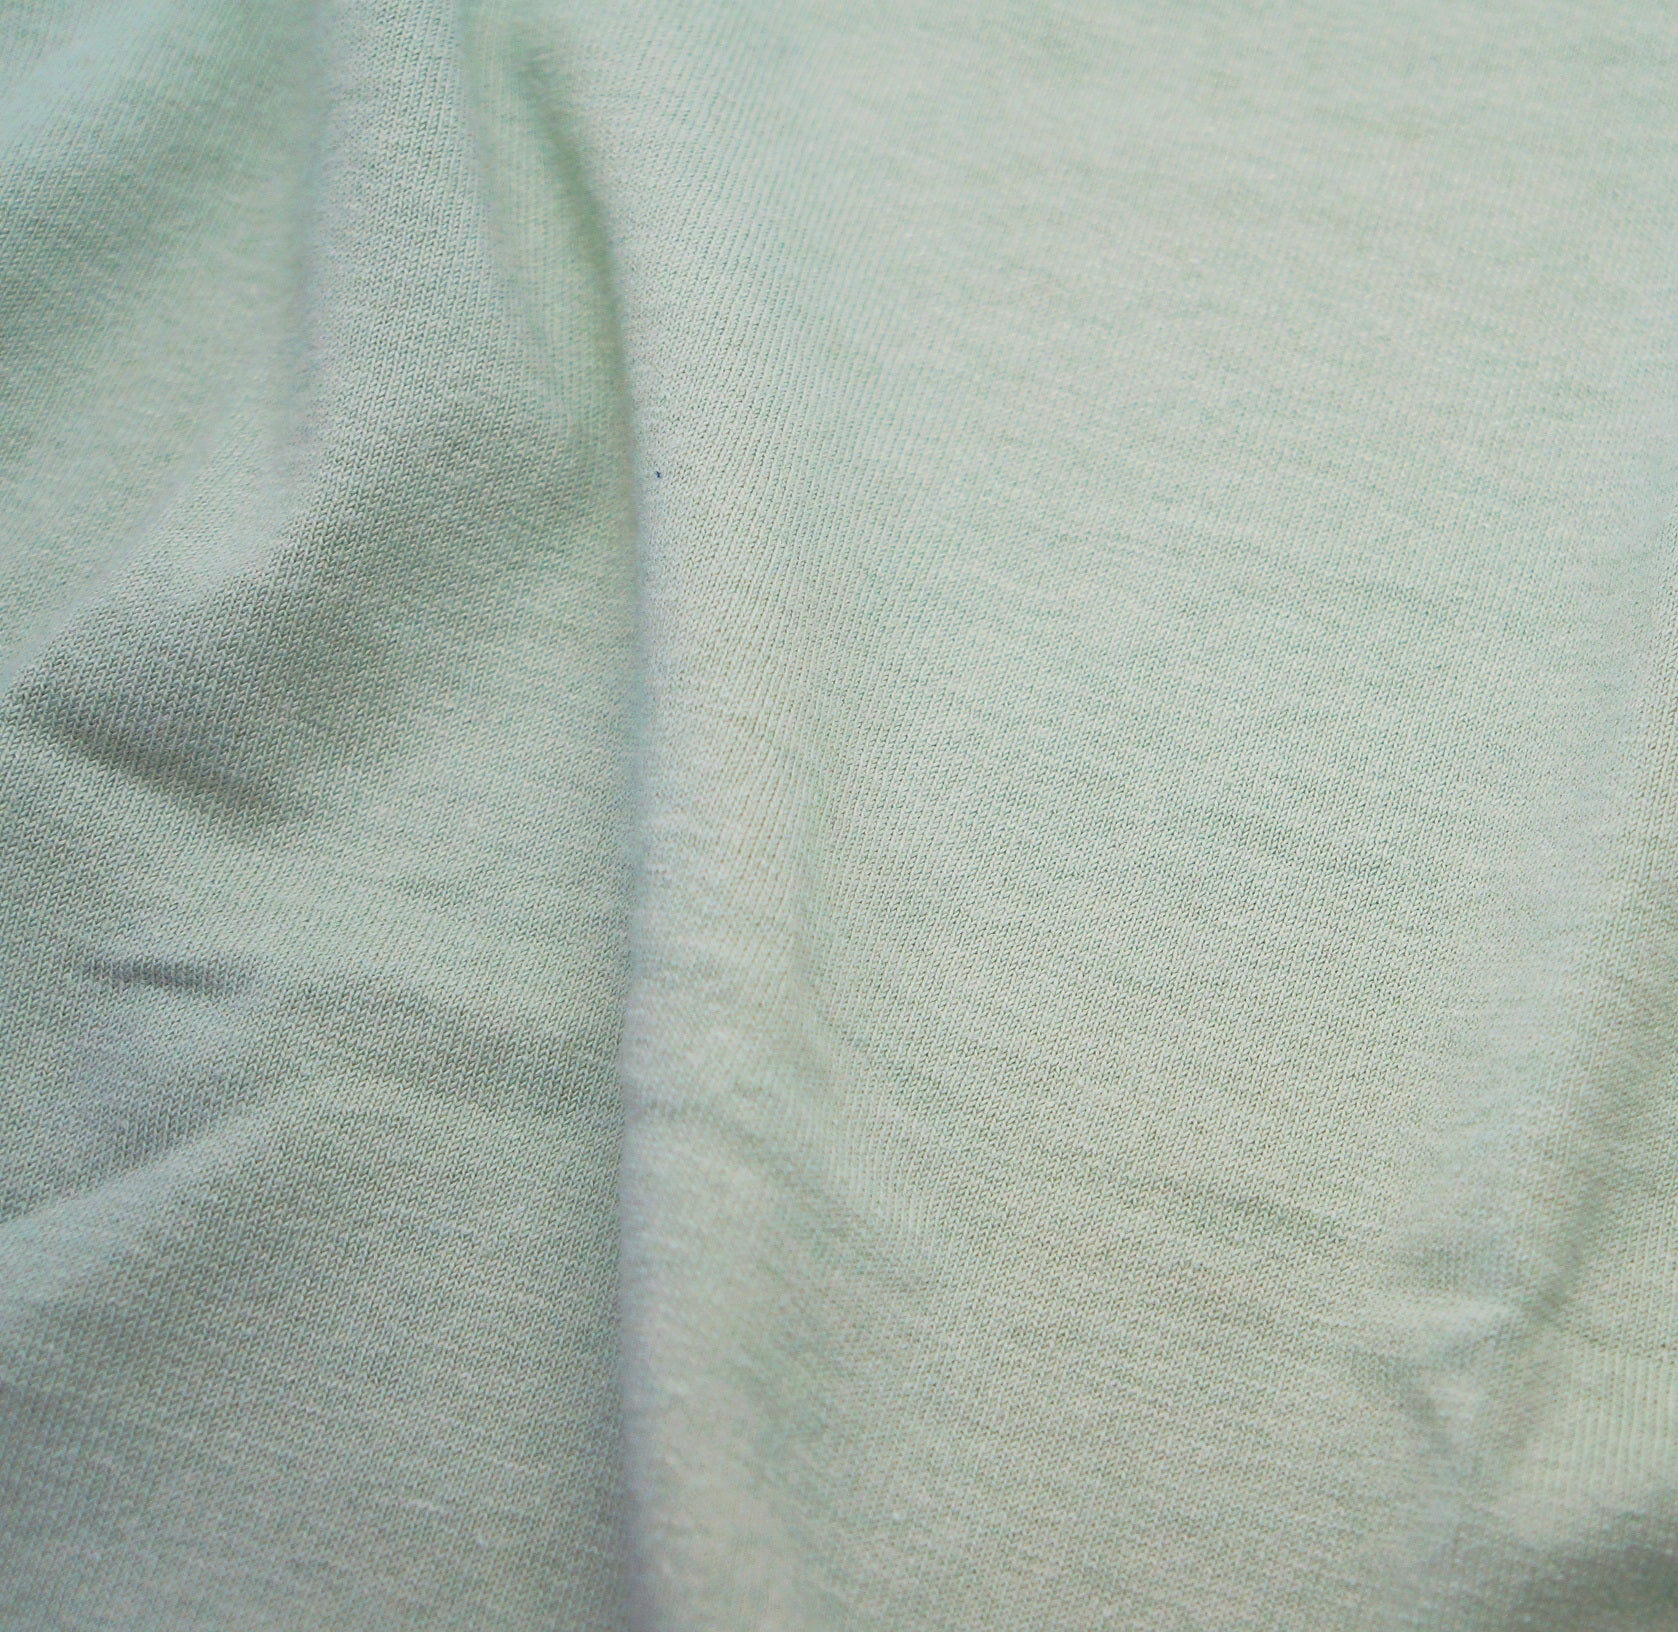 Sample Linen Fabric Swatches of Medium Weight Linen